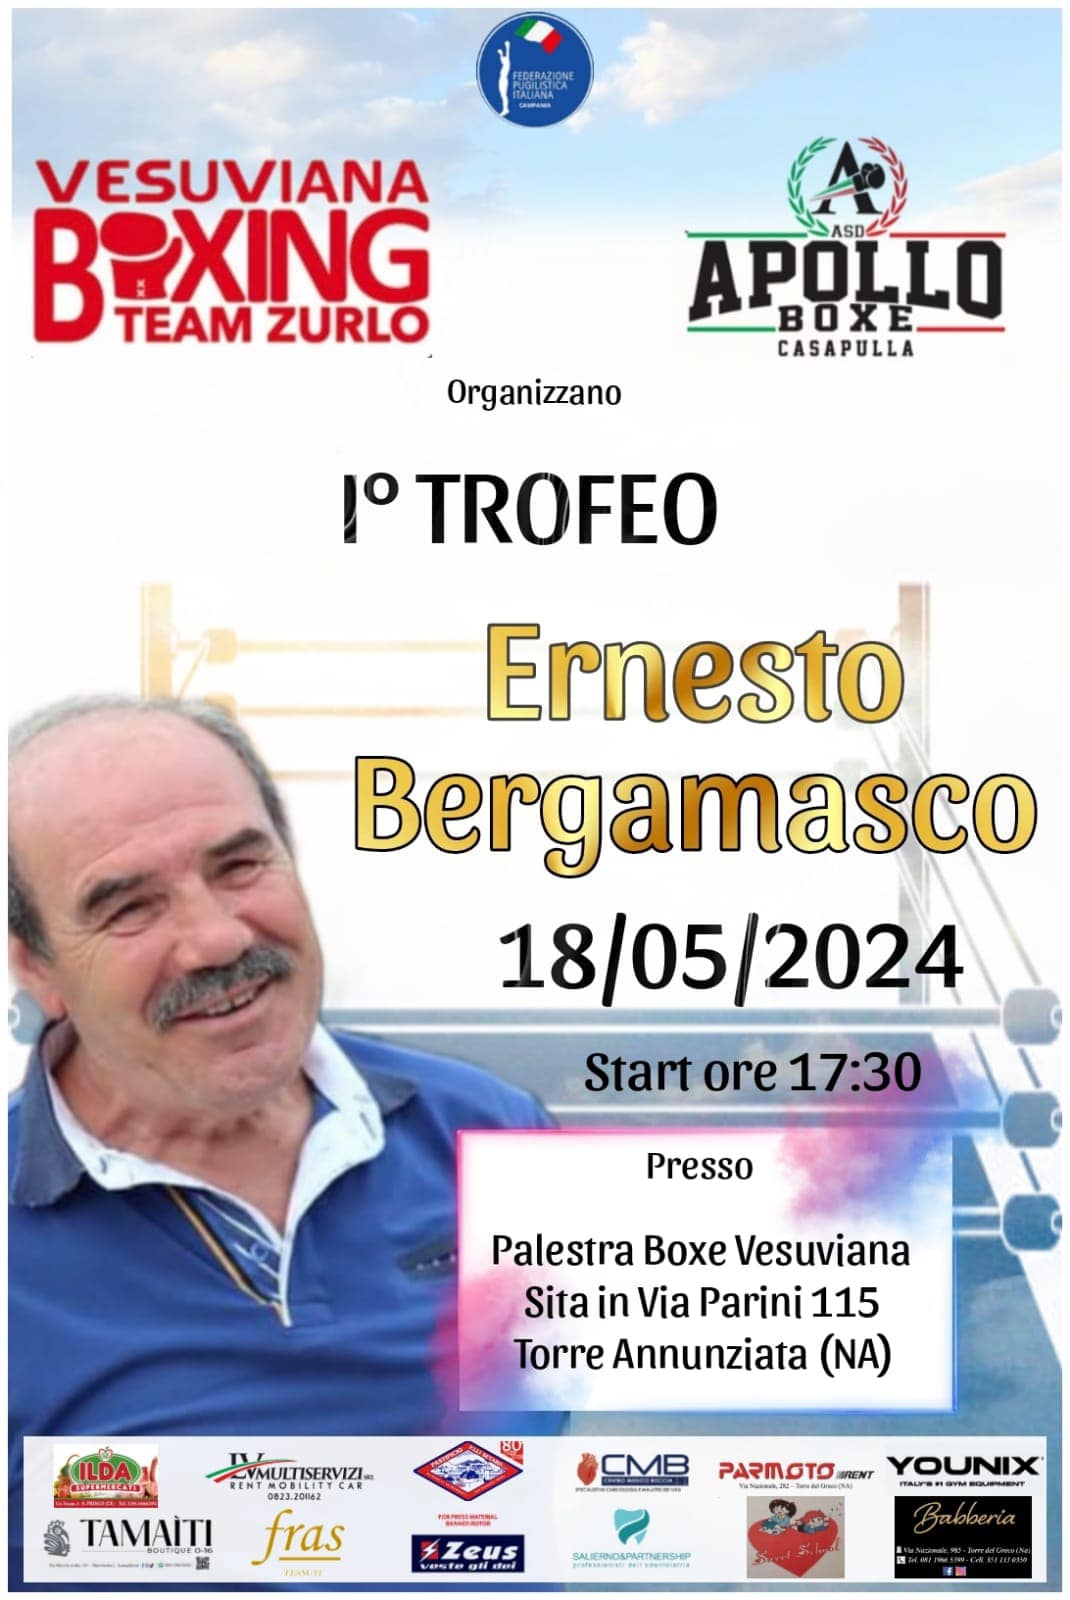 Fuori i secondi per Ernesto Bergamasco: il primo trofeo per ricordare il pugile leggenda della Boxe Vesuviana